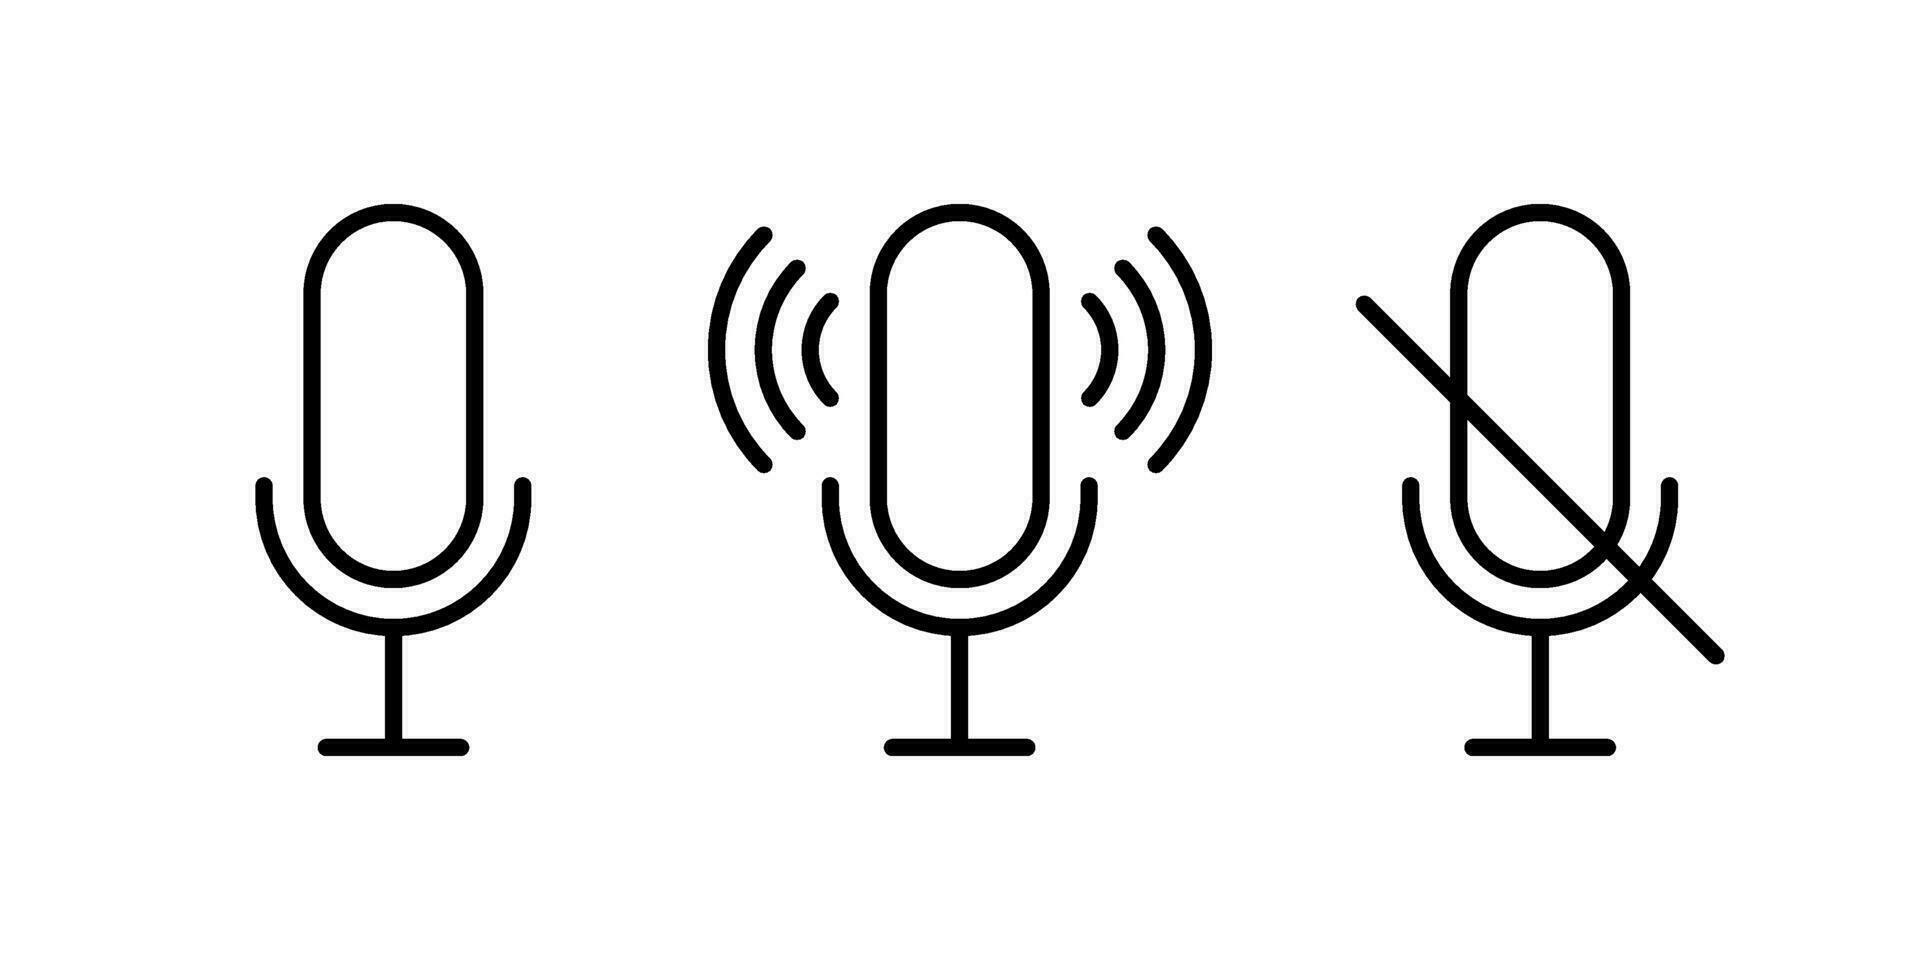 mikrofon, spela in och röst podcast linje tecken. mic symbol. vektor översikt ikon